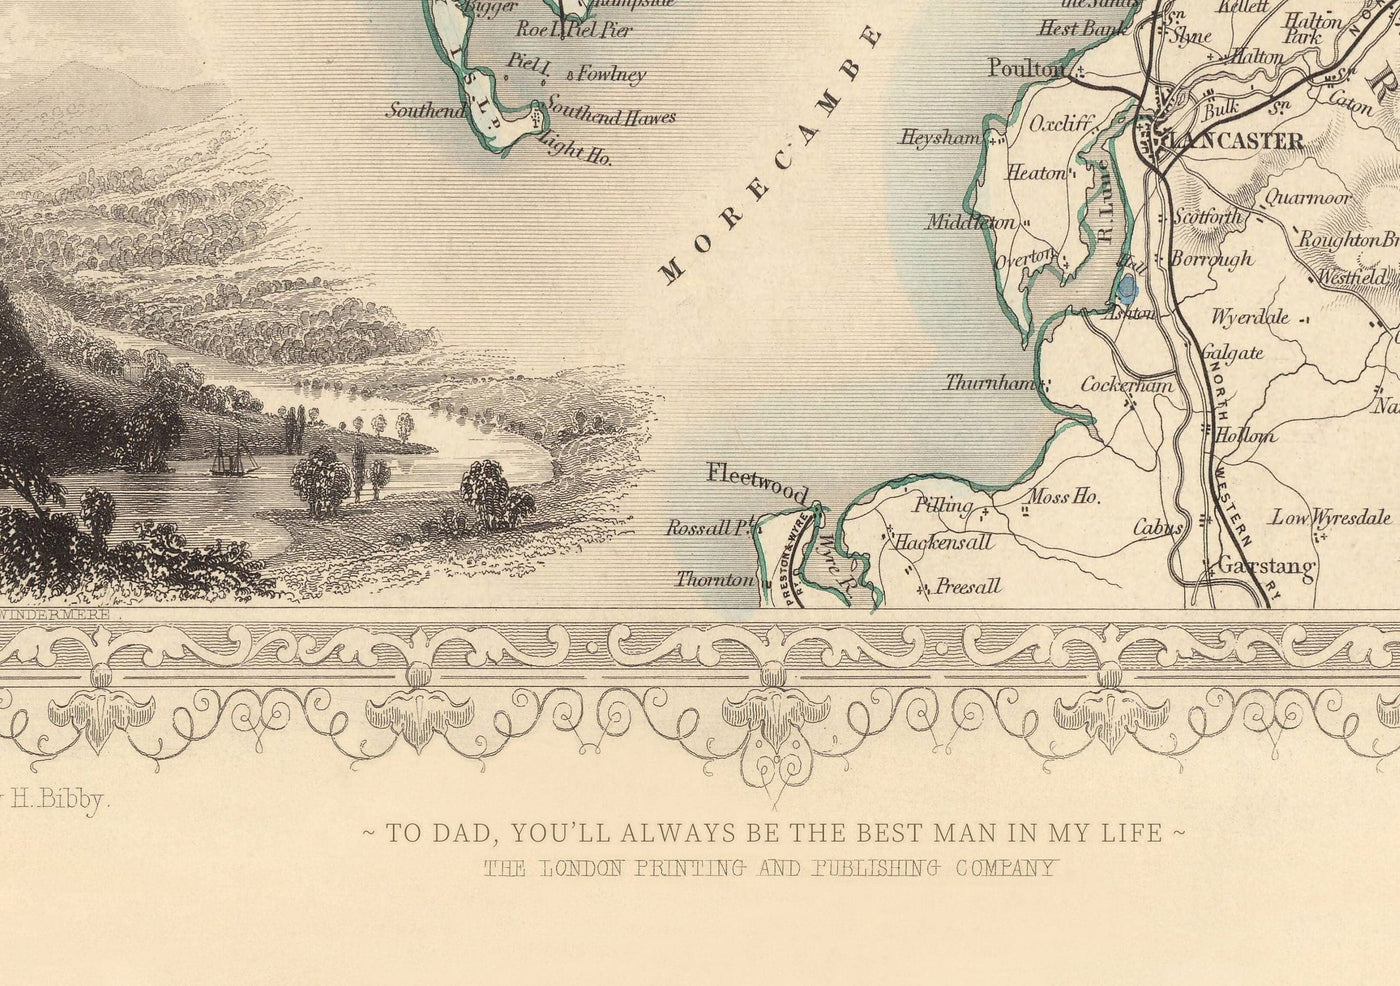 Seltene alte Karte von Leeds im Jahr 1851 von John Rapkin